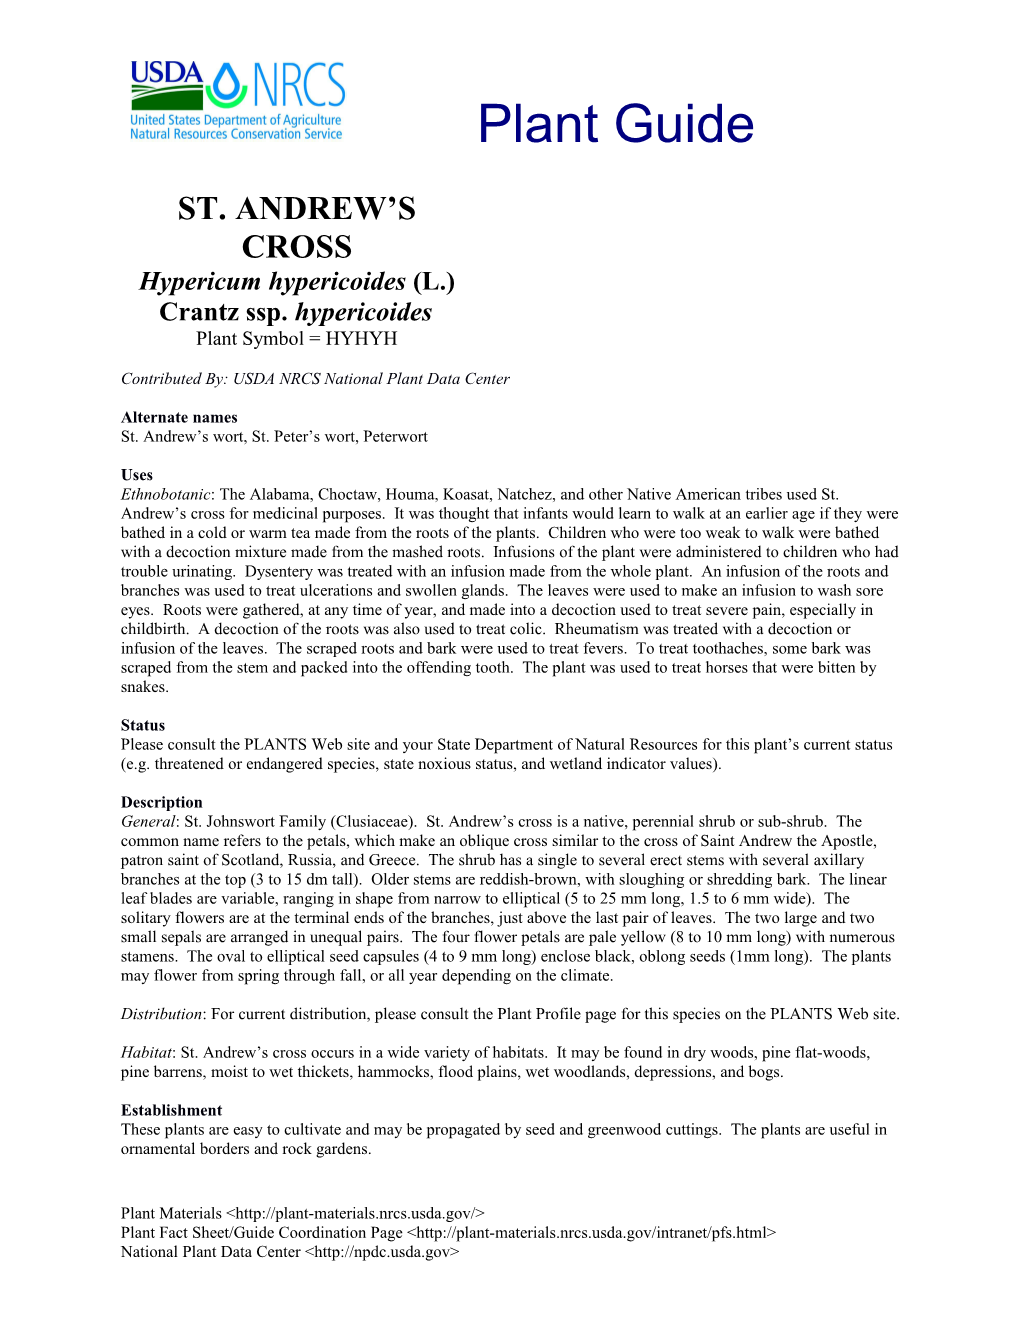 St. Andrew S Cross